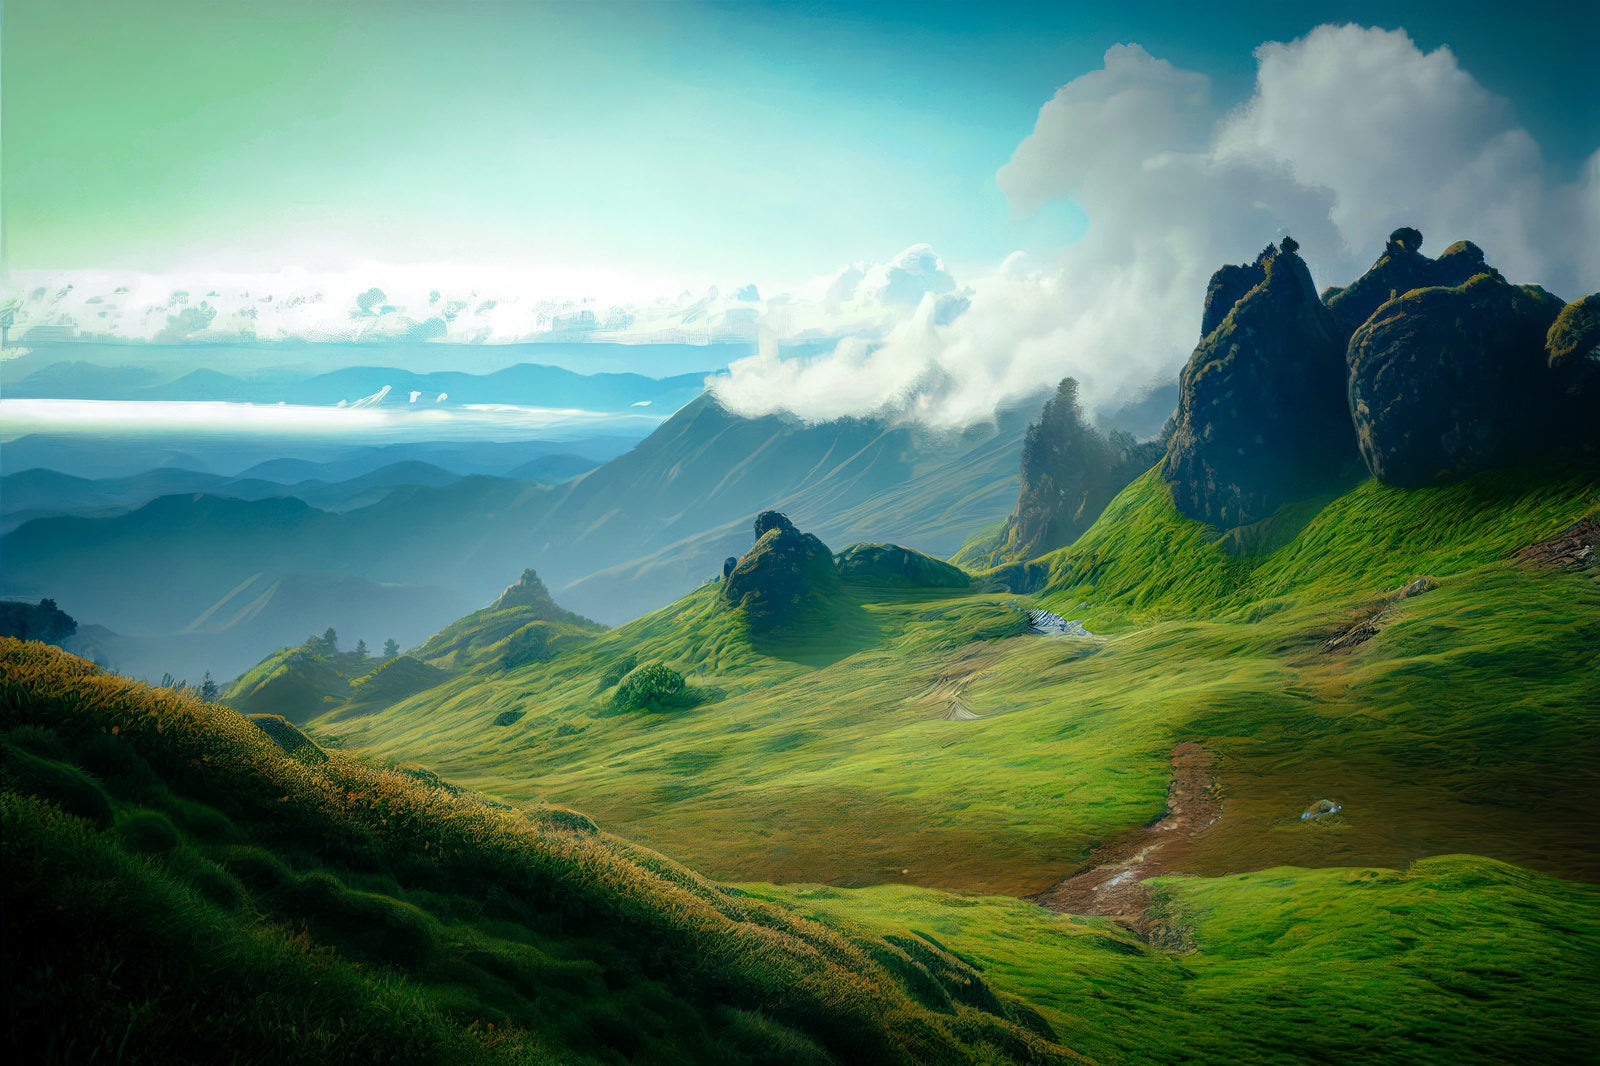 「圏谷に抱かれた高原の山々の響き」の写真